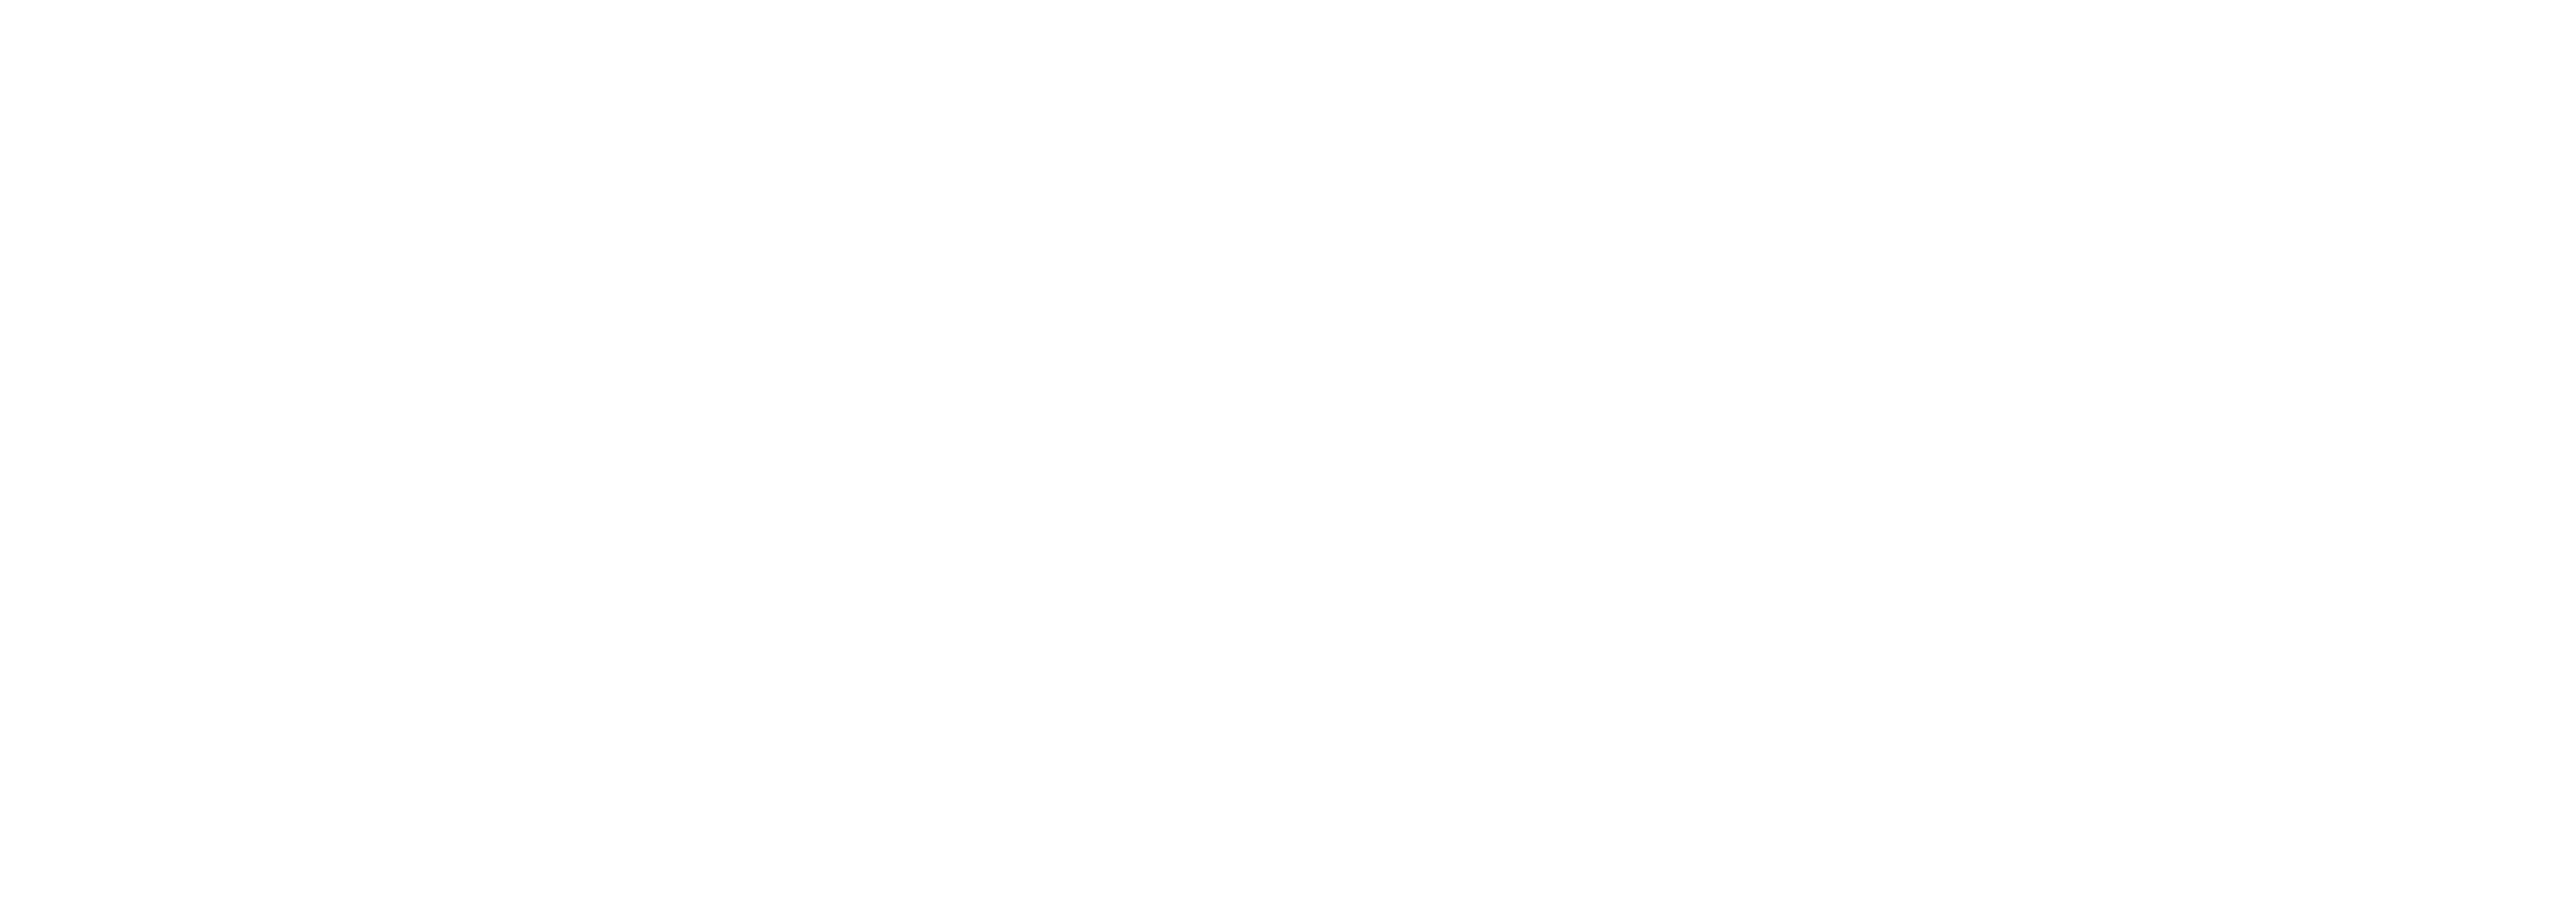 Revista Diabetica